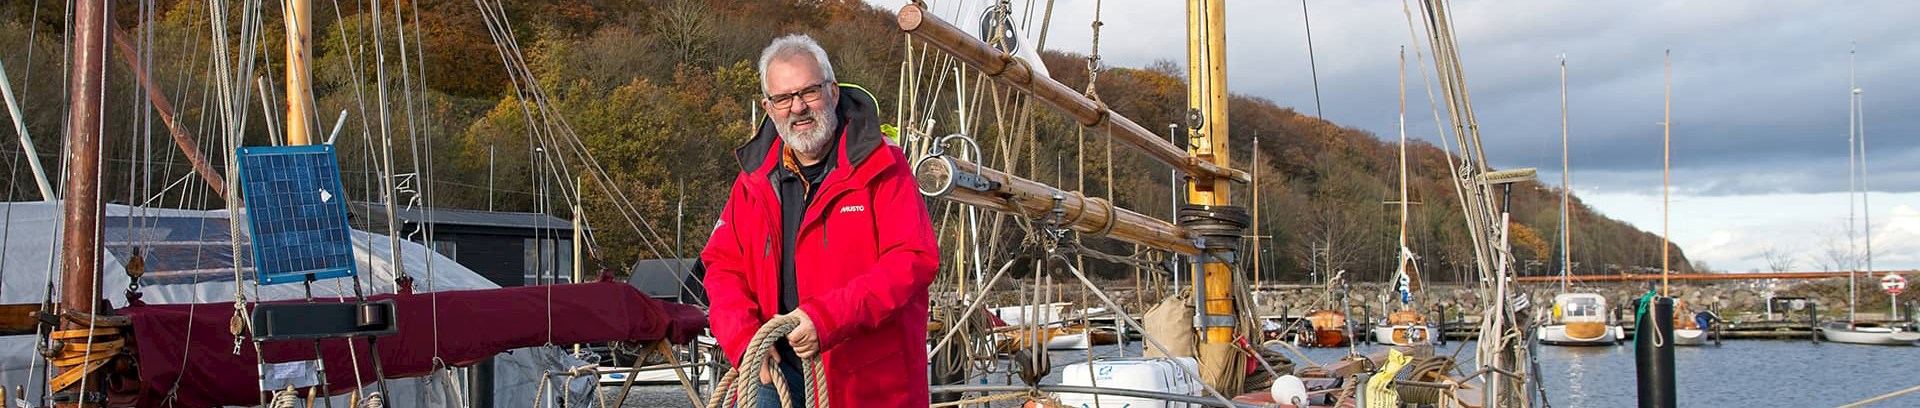 Poul Kjærgård sejlerunderviser ved FOF Aarhus, på båd i Aarhus Havn. Underviser i Skipper duelighedsprøve teori-kursus